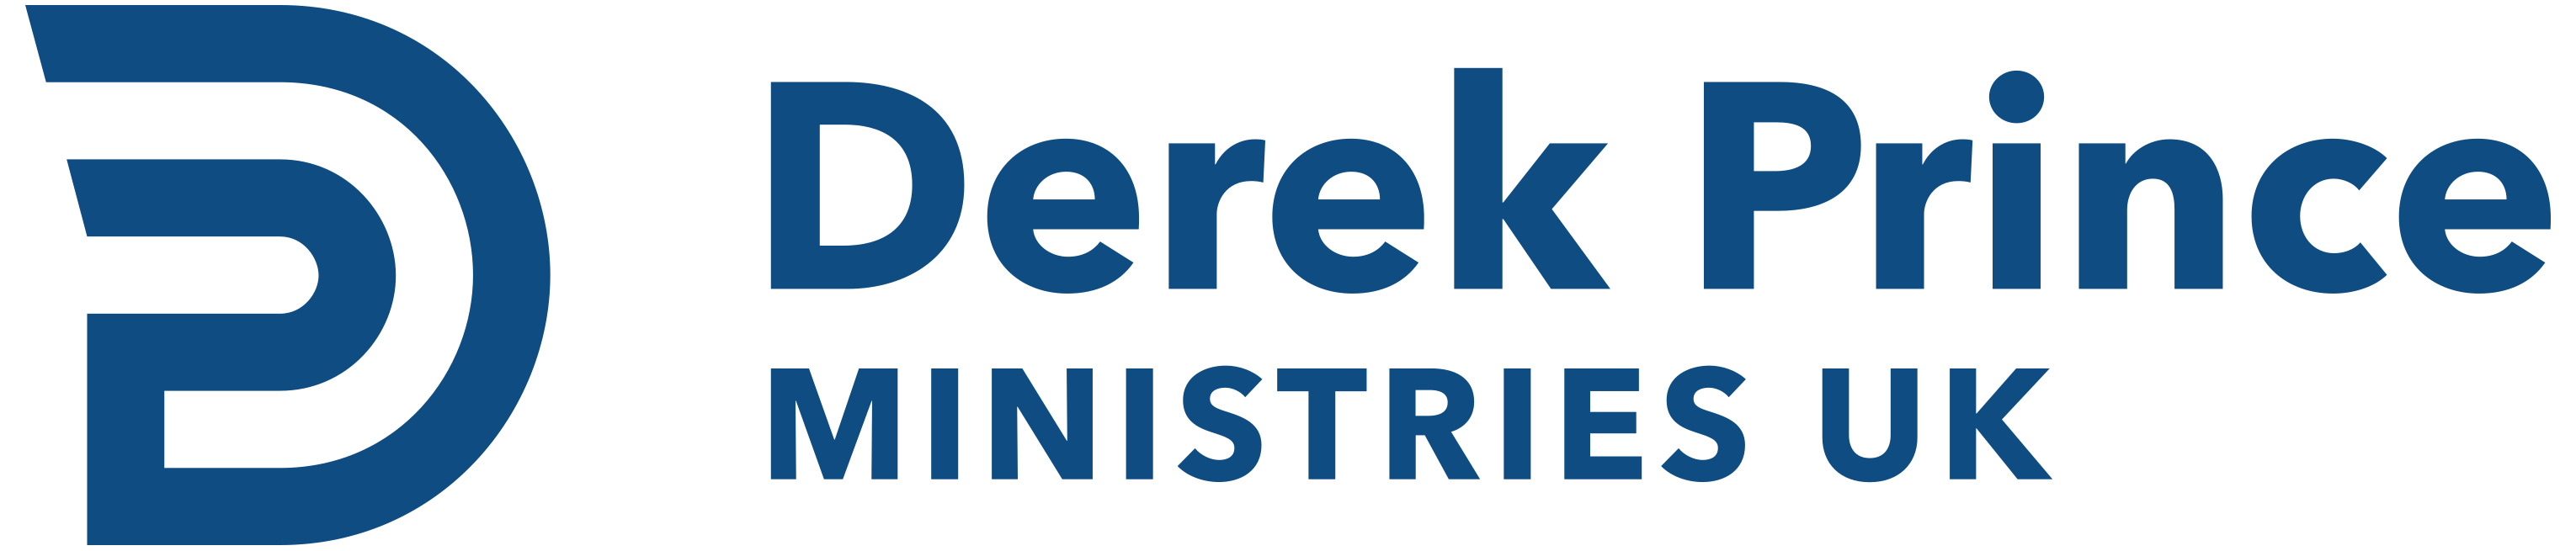 Derek Prince Ministries (UK) logo